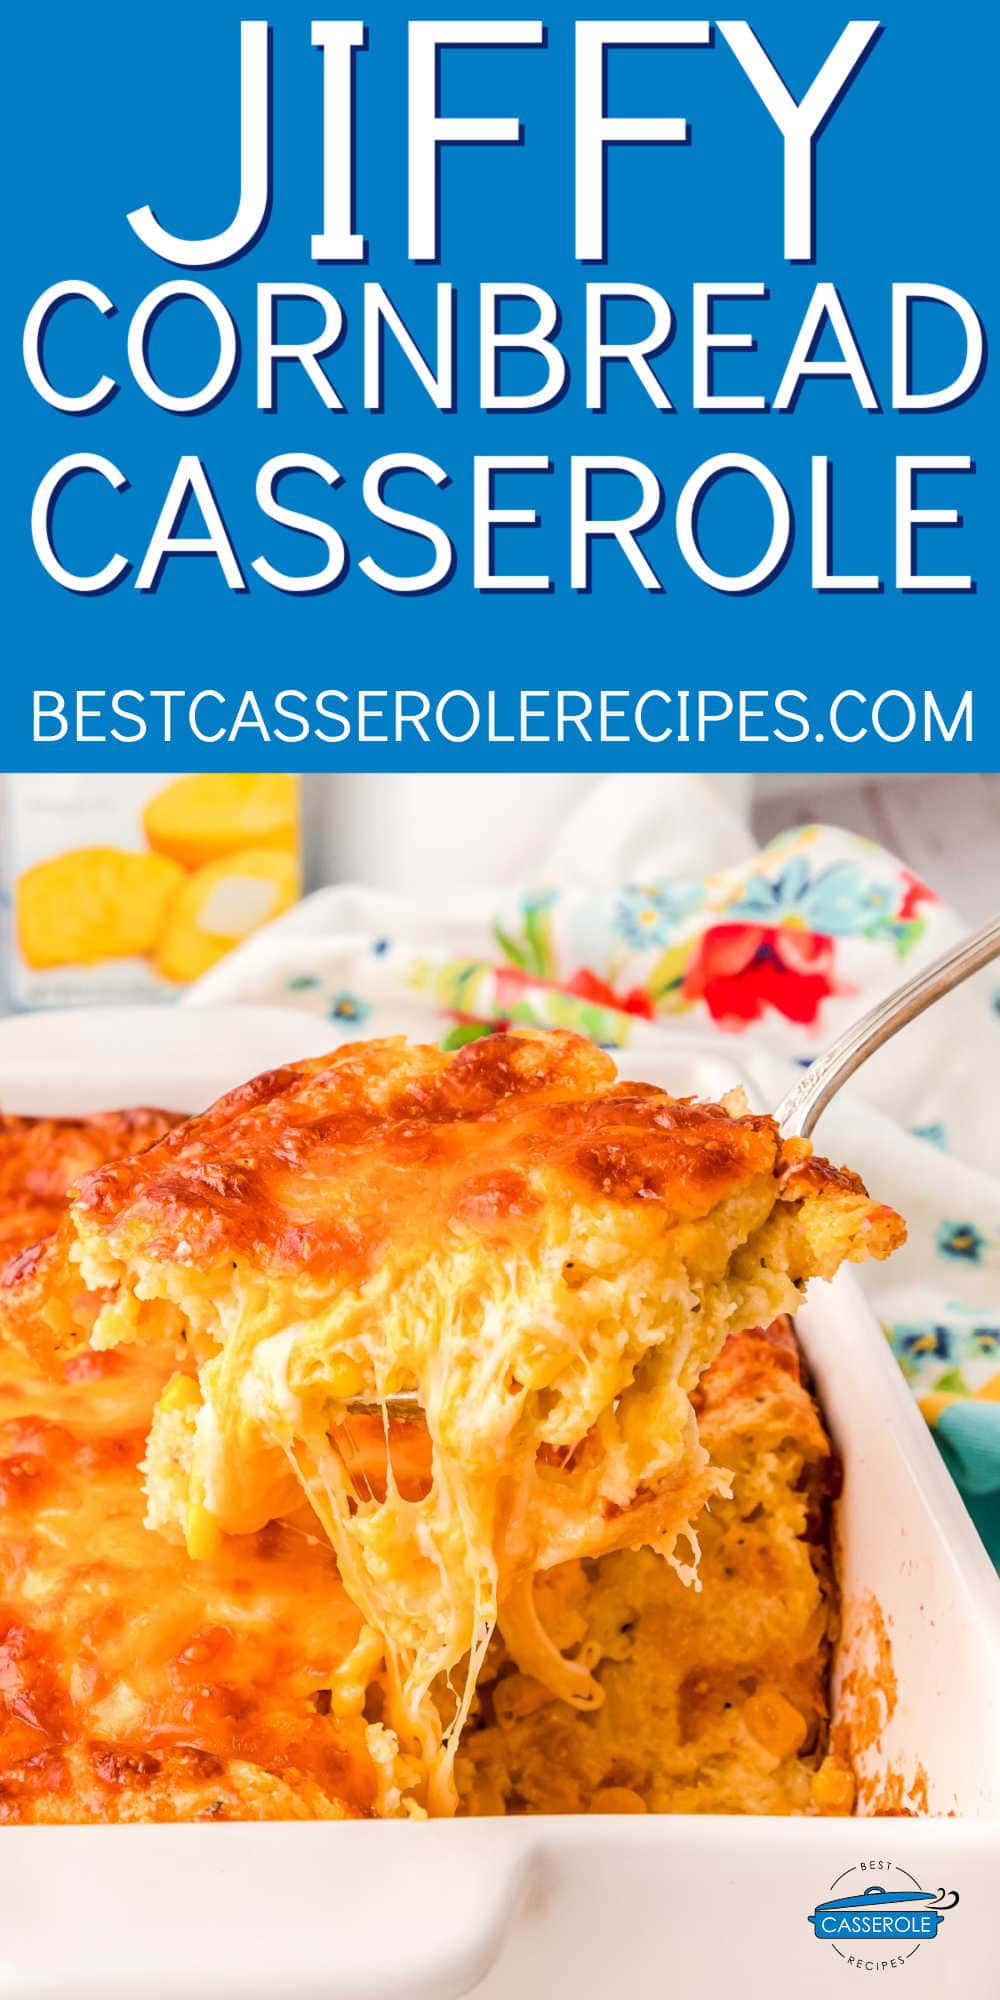 picture of cheesy corn casserole